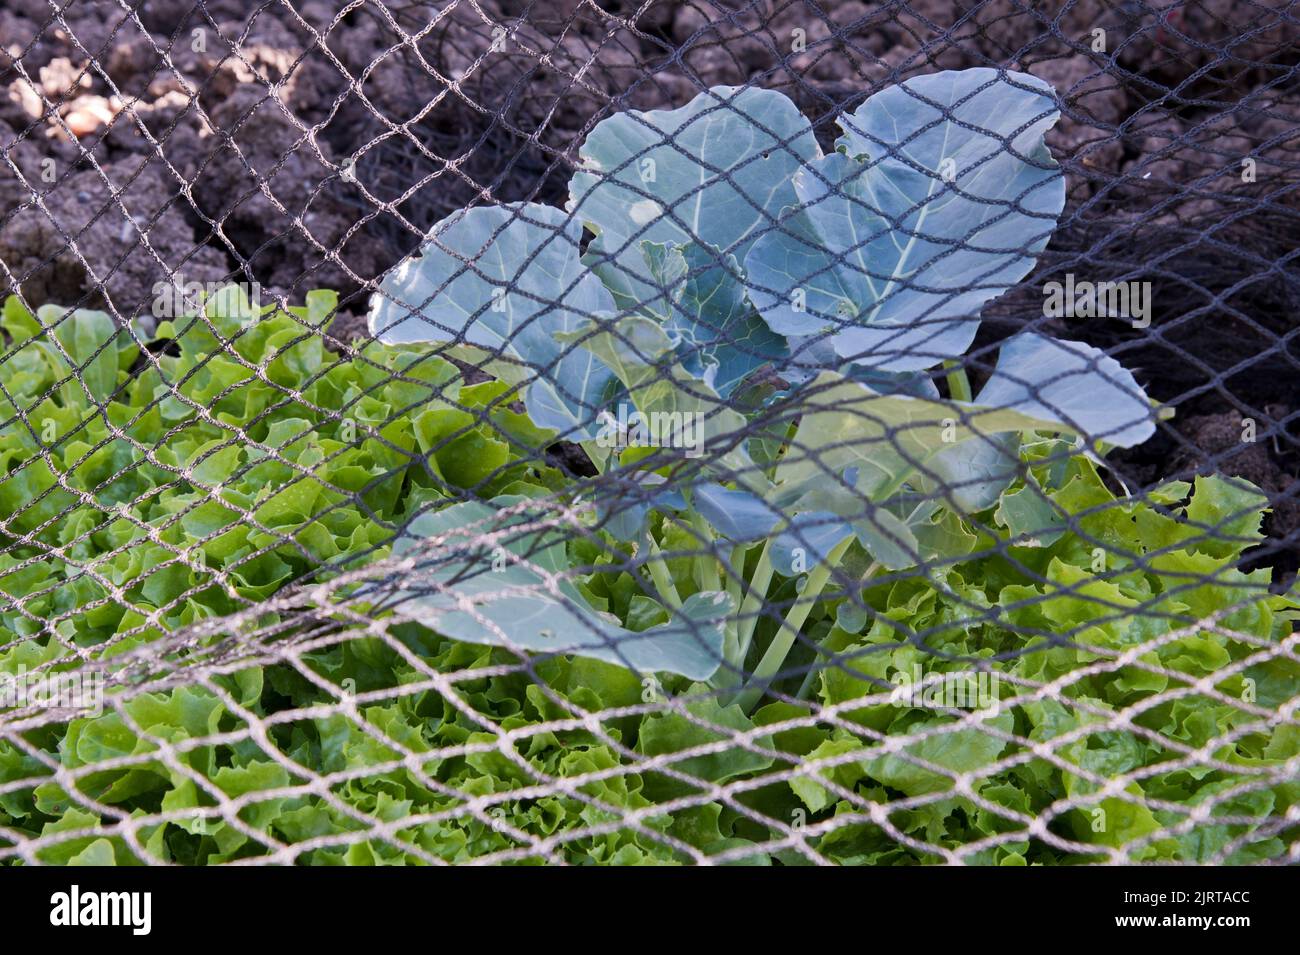 Lattuga coltivata in contenitore piantata in e intorno ad una pianta di broccoli di Ironman, risparmiando spazio e proteggendo il raccolto con la rete nella macchia di veg. Foto Stock